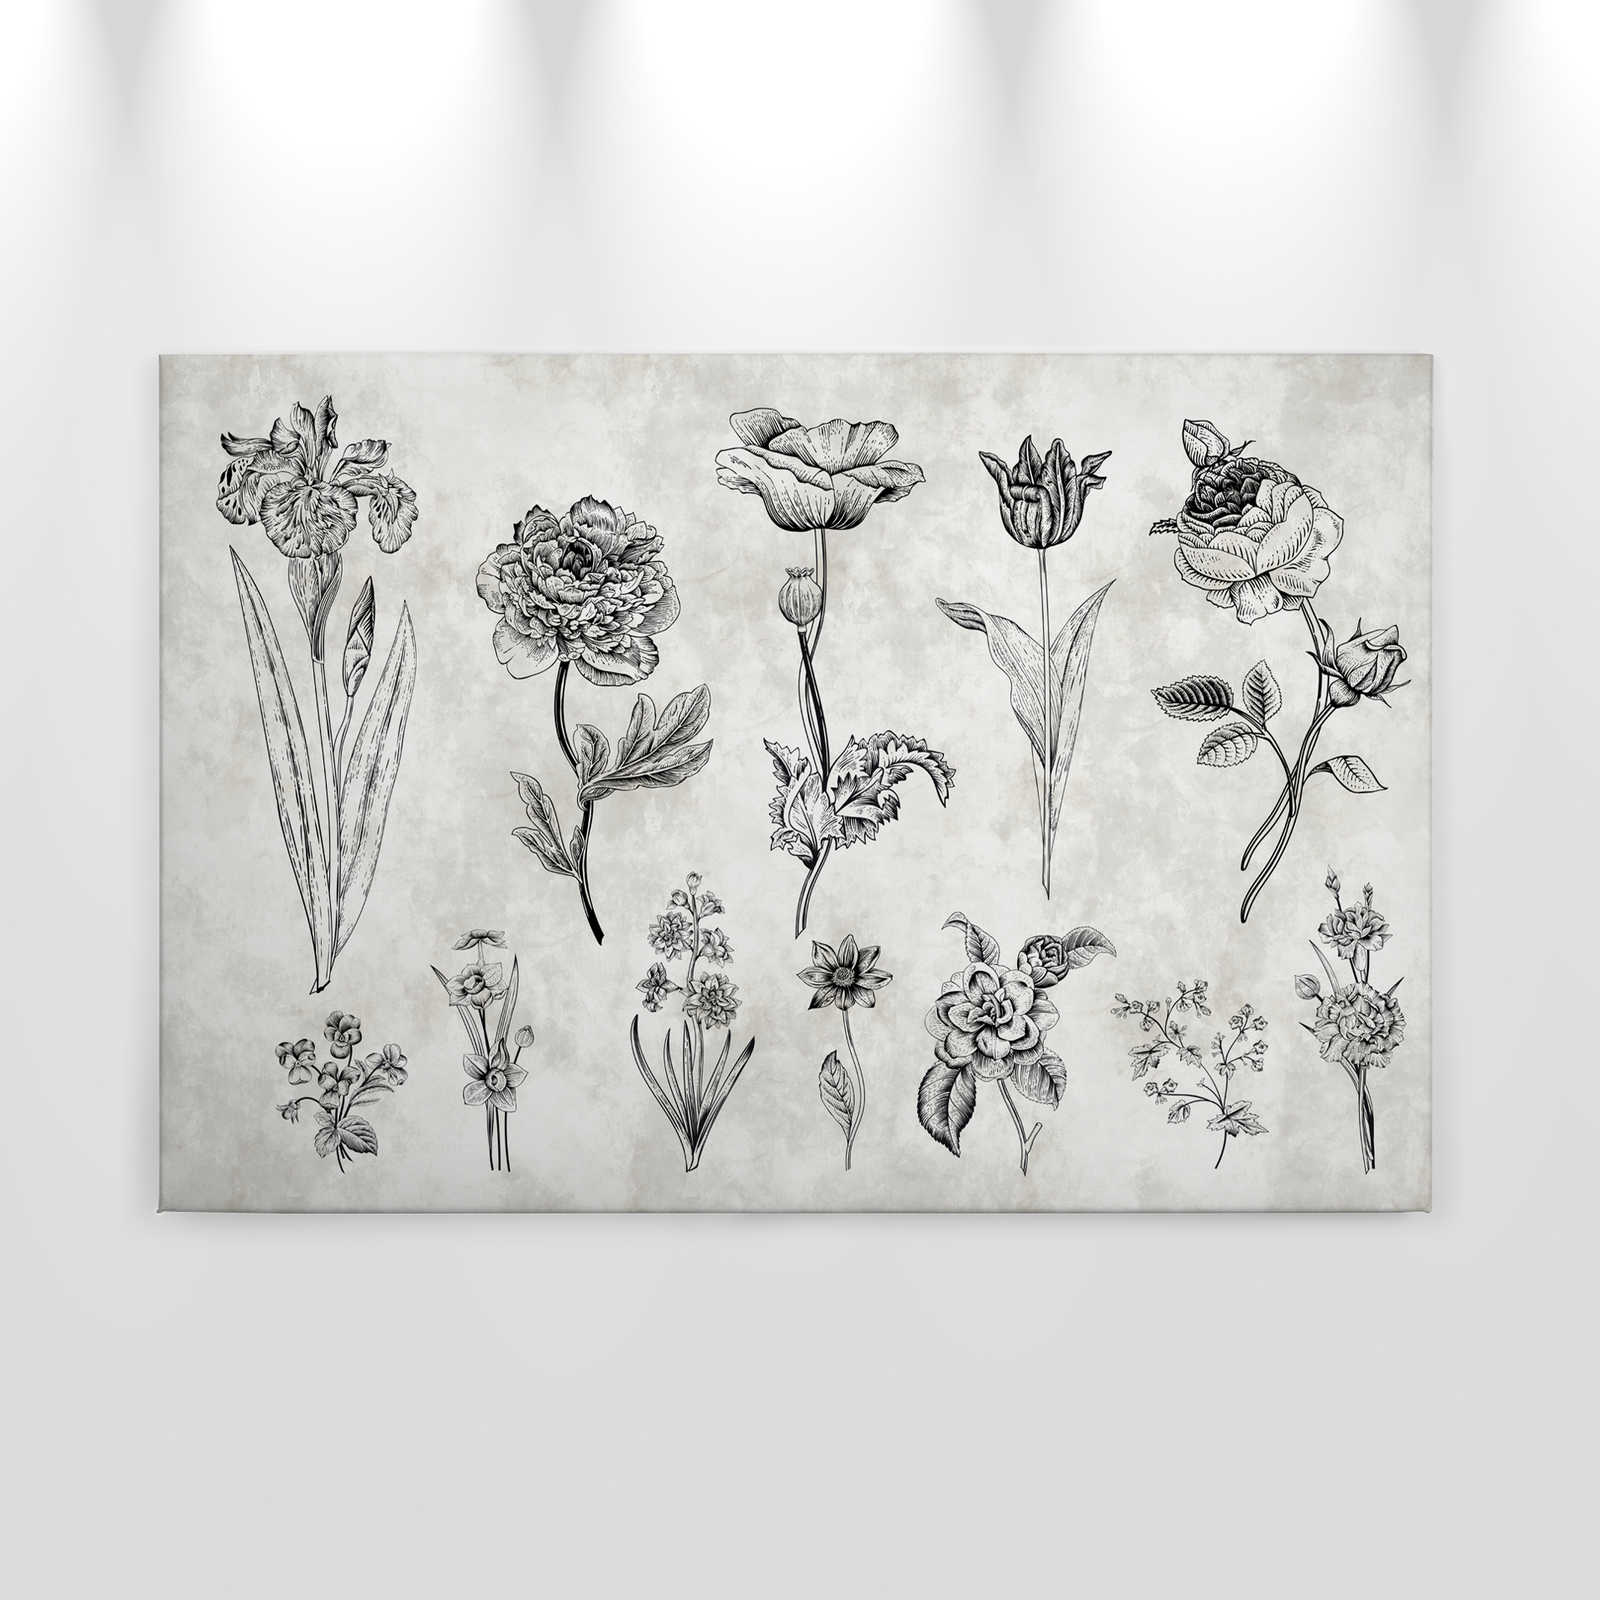             Leinwandbild Blumen im Zeichenstil – 0,90 m x 0,60 m
        